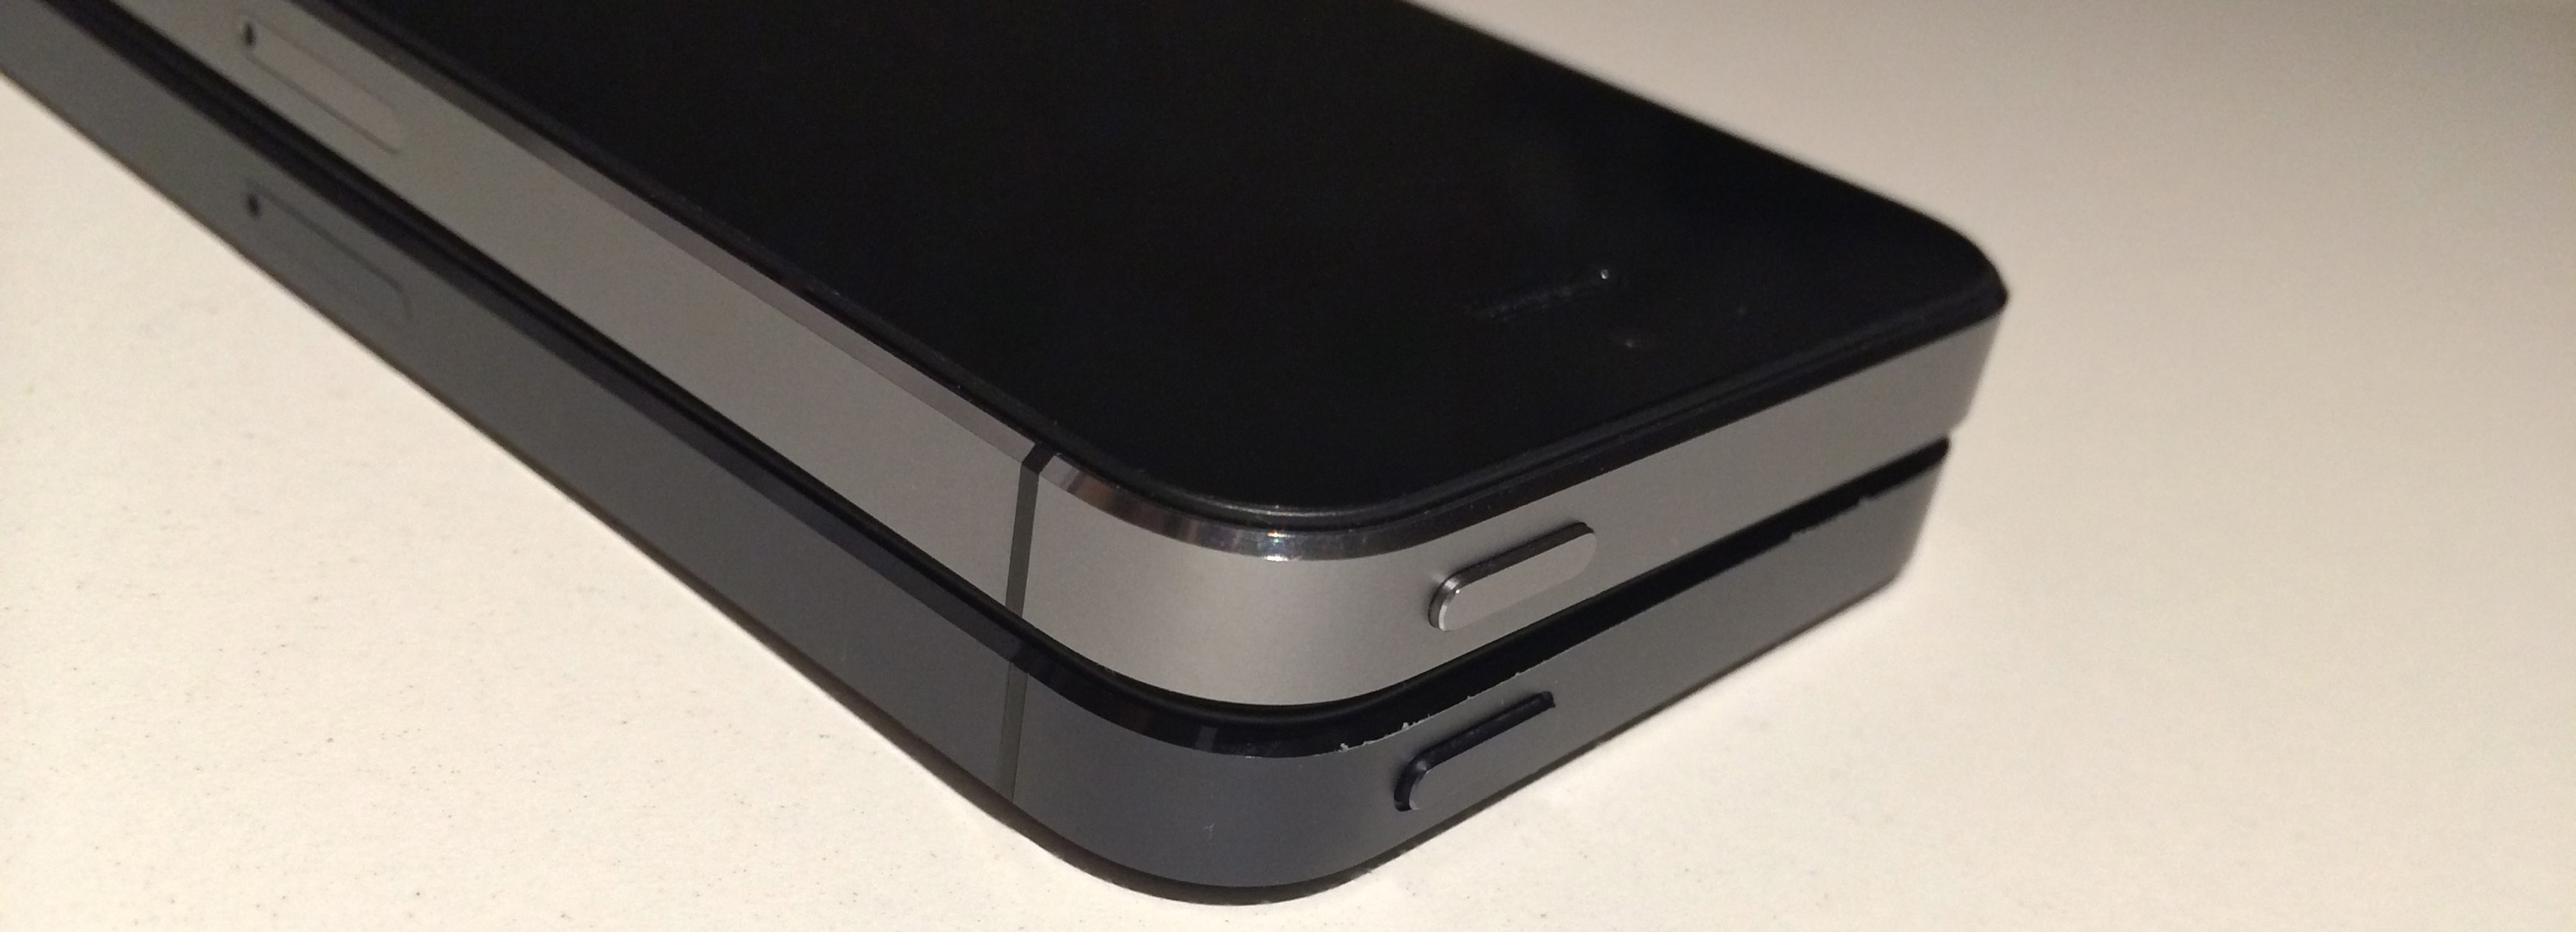 iPhone 5sスペースグレー・iPhone 5ブラック＆スレート比較フォト